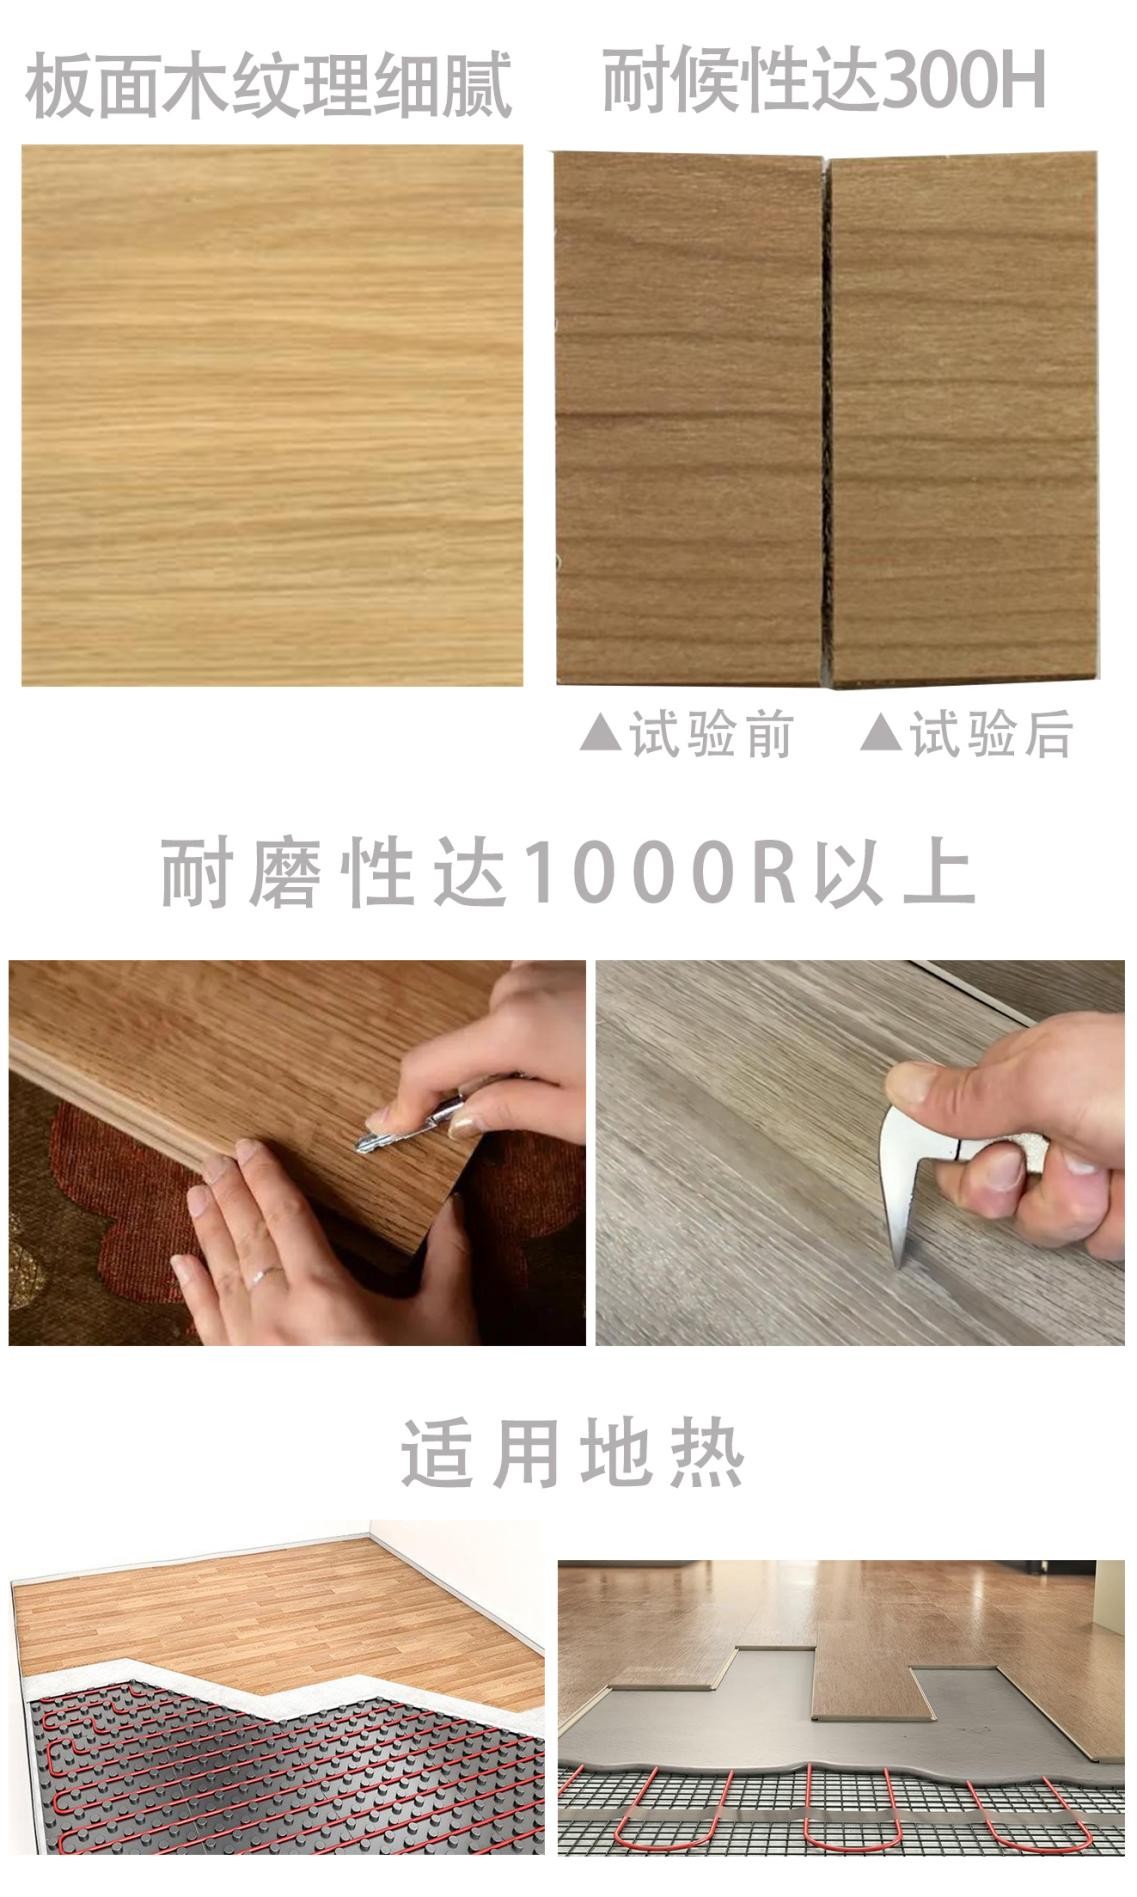 恒德地板品牌家族成员——日本木時KITOKI复合实木地板